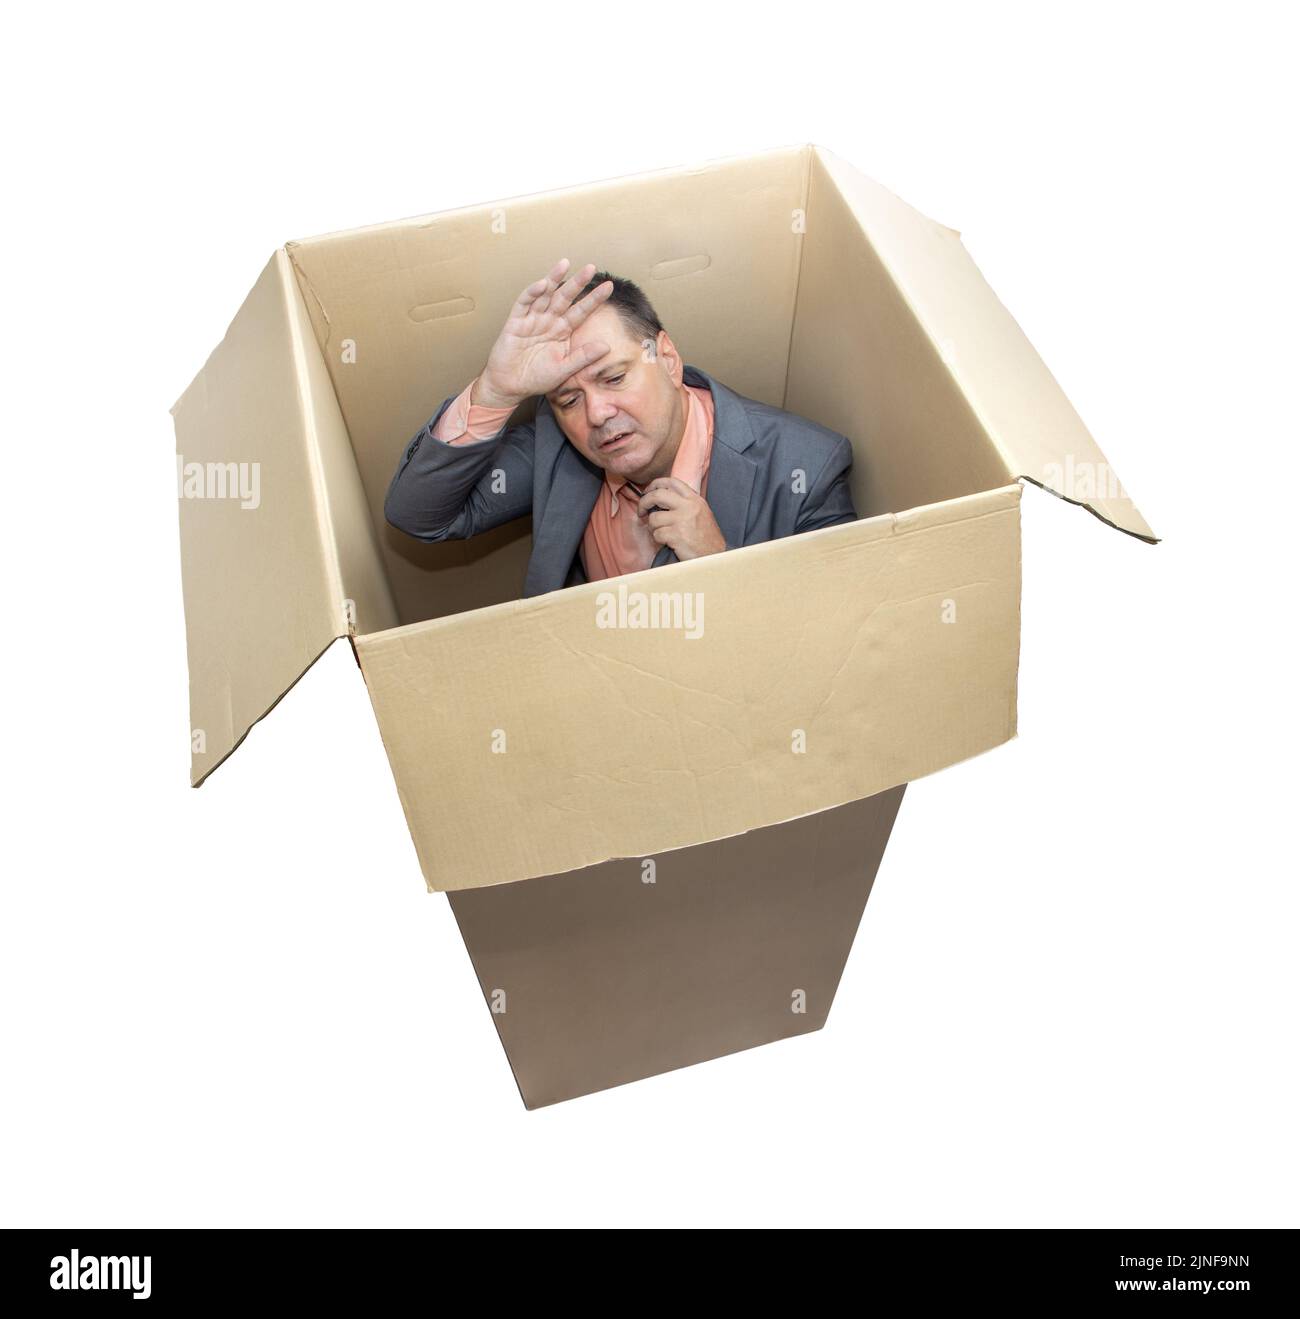 Homme stressé dans un costume debout à l'intérieur d'une boîte en carton, isolé sur fond blanc Banque D'Images